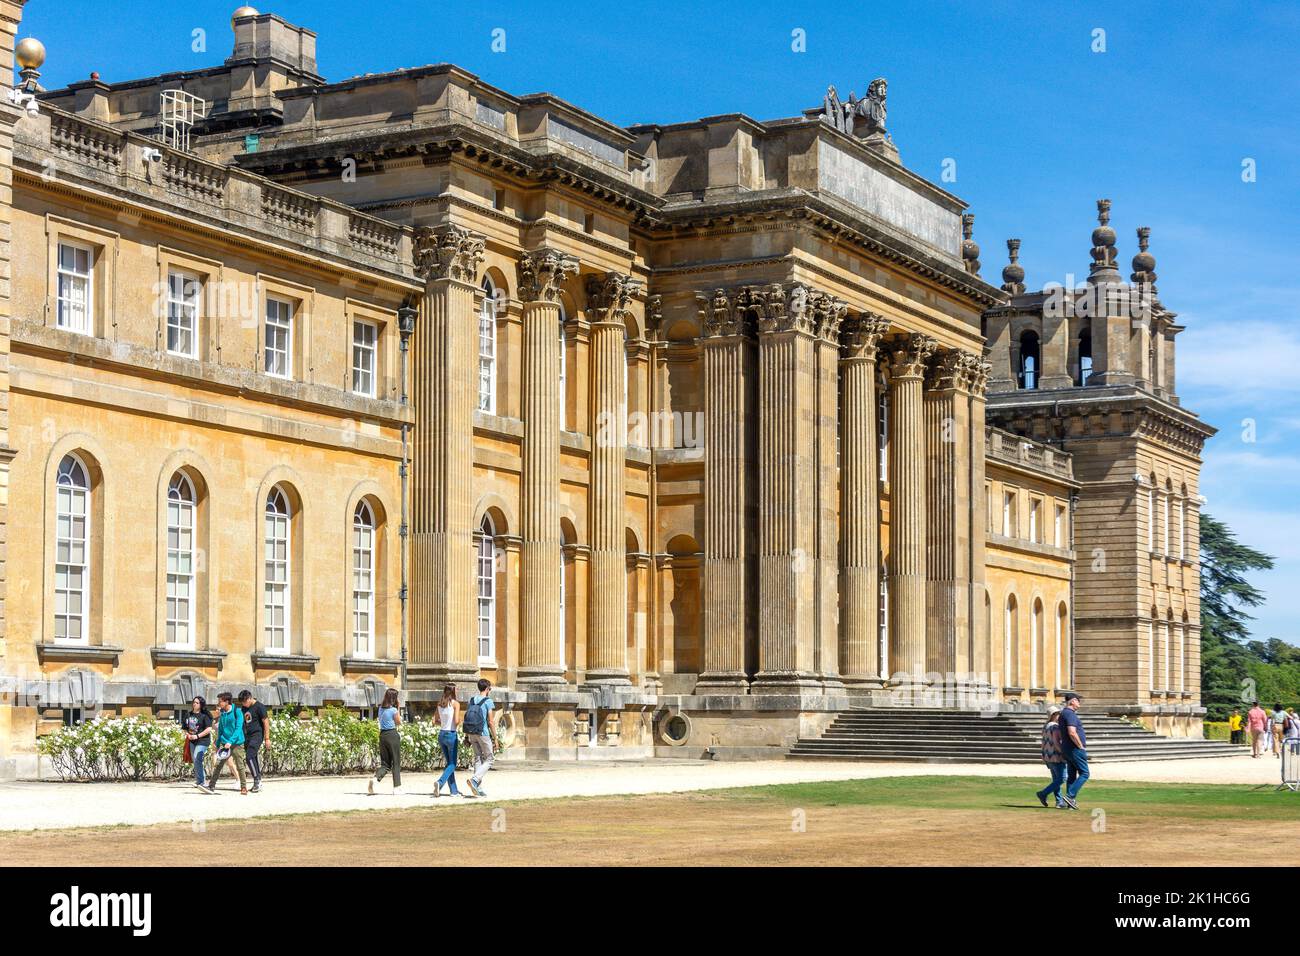 Blick auf den Palast vom South Lawn, Blenheim Palace, Woodstock, Oxfordshire, England, Vereinigtes Königreich Stockfoto